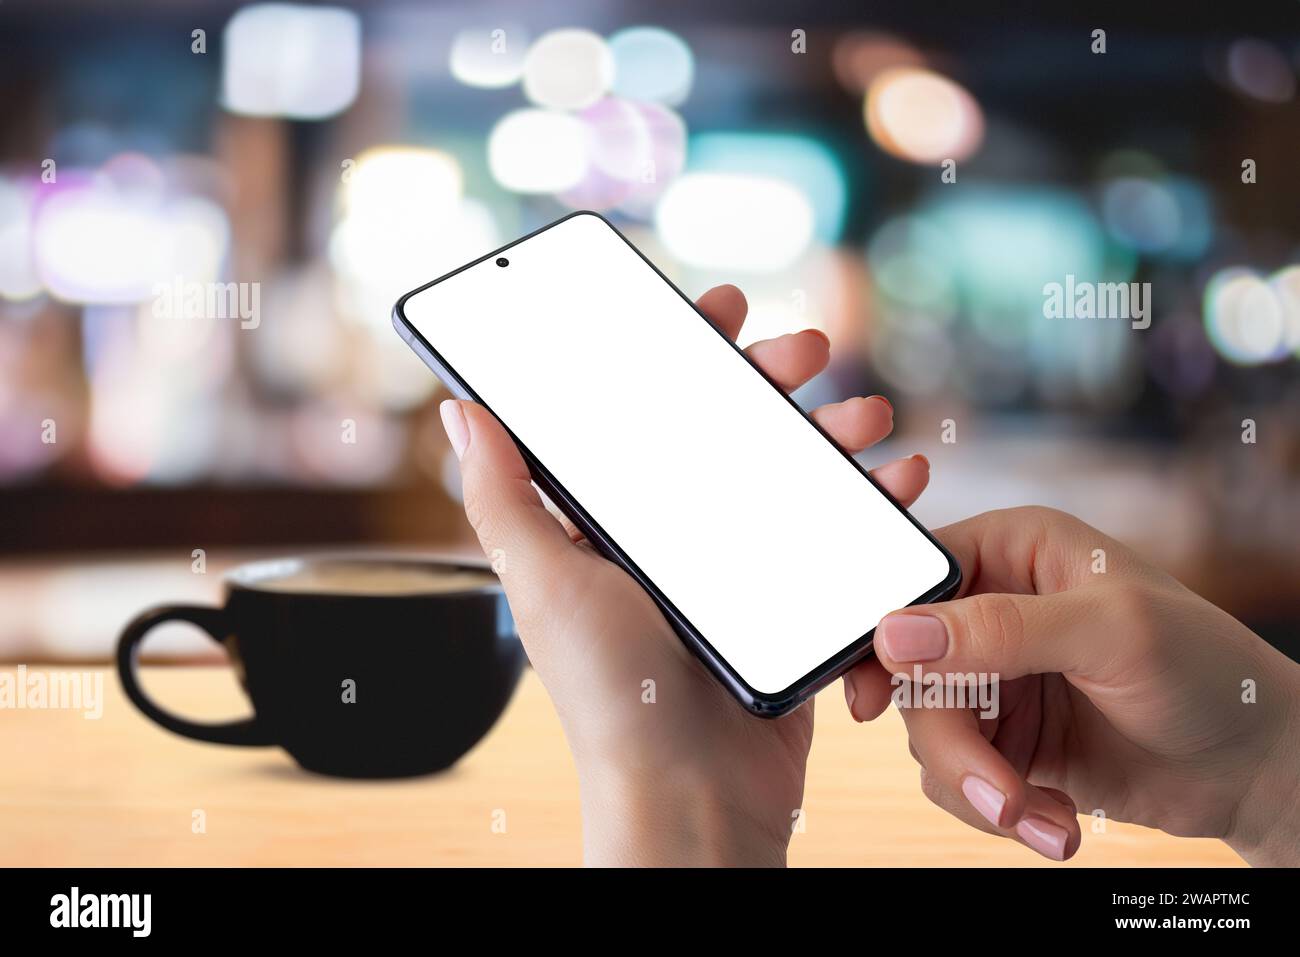 Mockup da smartphone in mano con tazza da caffè sul tavolo, creando un'accogliente idea di lettura delle notizie sul caffè. Perfetto per mostrare contenuti digitali in un rel Foto Stock